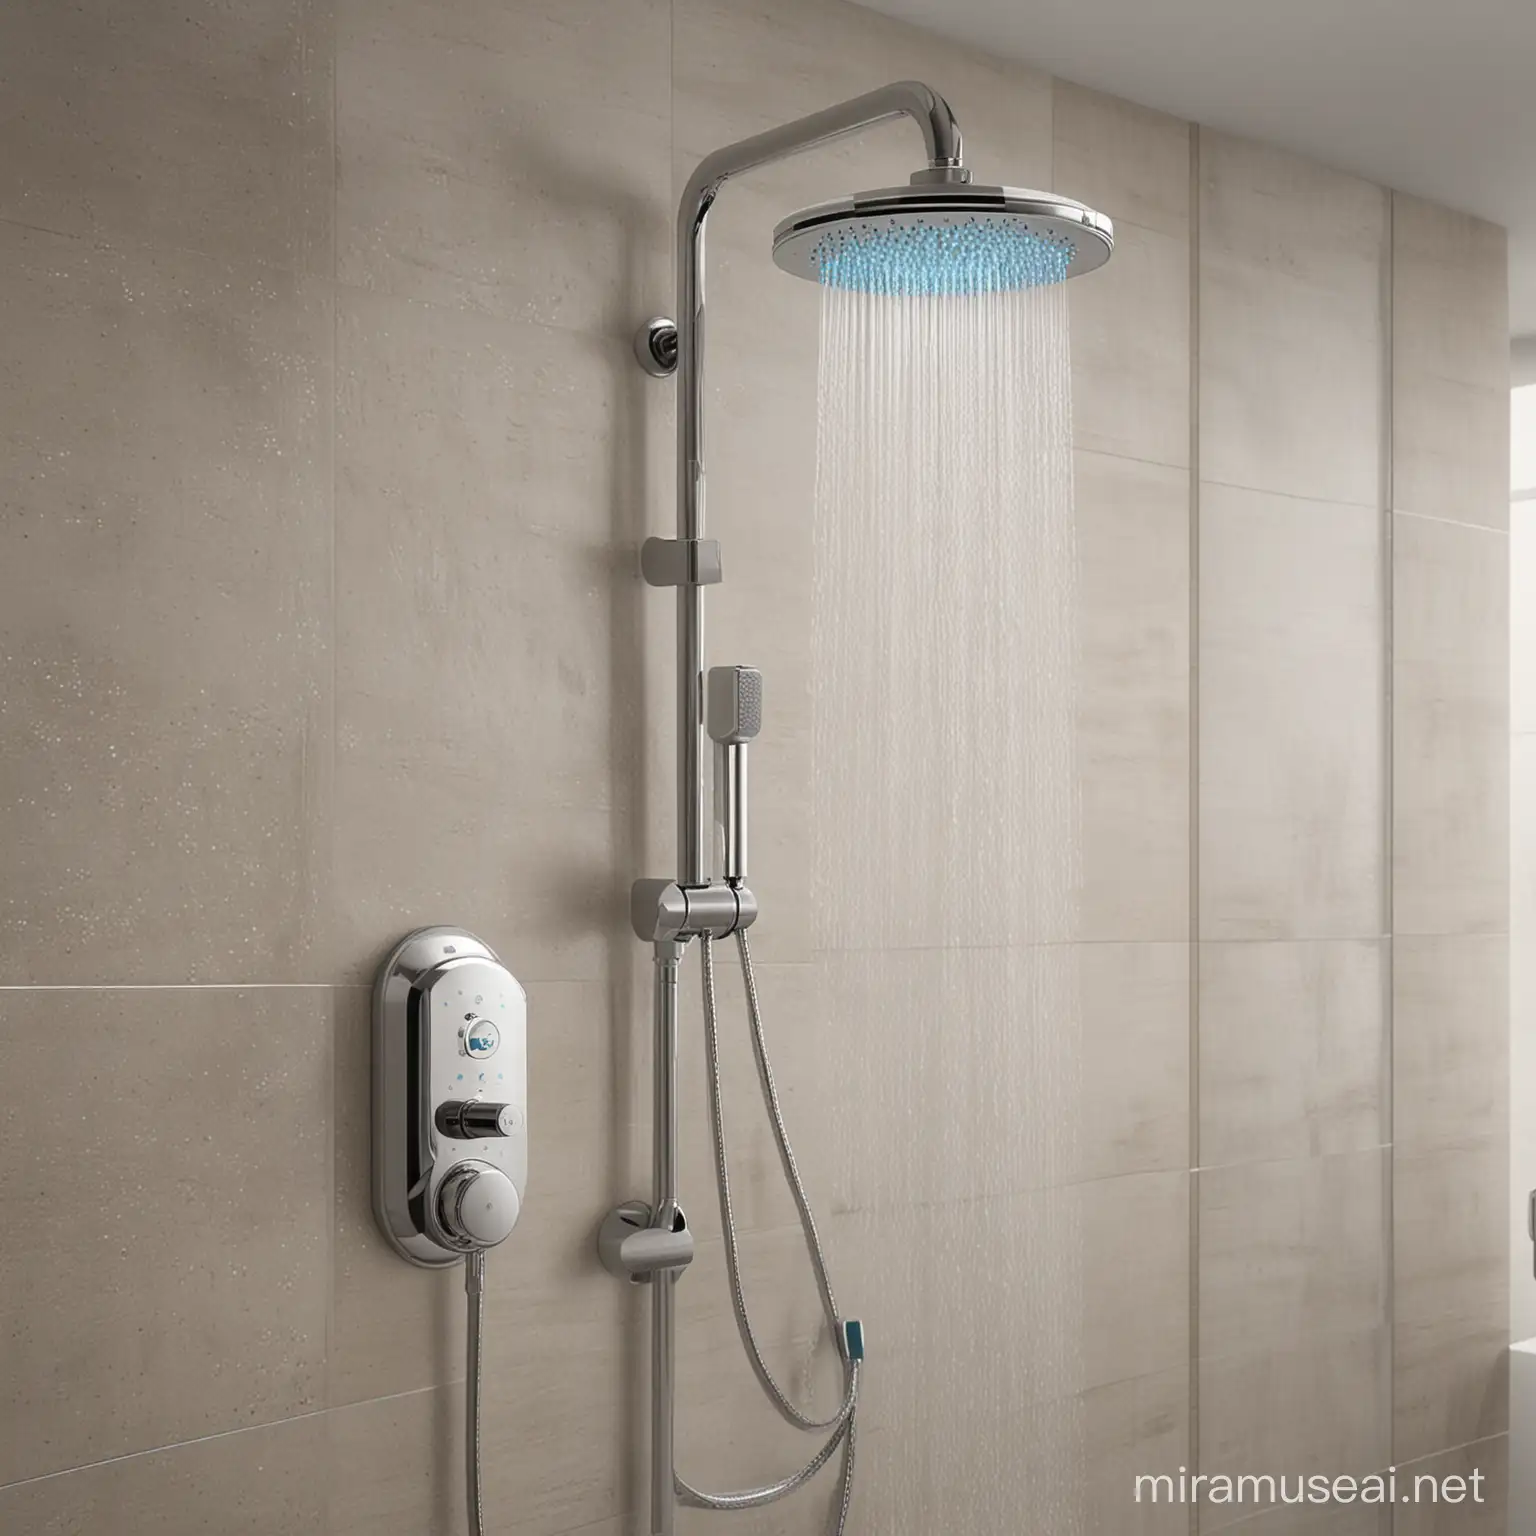 "Bayangkan shower masa depan yang dilengkapi dengan teknologi AI untuk menentukan tekanan air yang dibutuhkan pengguna saat mandi. Gambarkan desain shower tersebut, termasuk bentuk, material, fitur layar sentuh, sensor AI, dan kemampuan penyesuaian tekanan air secara otomatis. Jelaskan juga bagaimana desain ini dapat memberikan pengalaman mandi yang efisien, nyaman, dan ramah lingkungan."